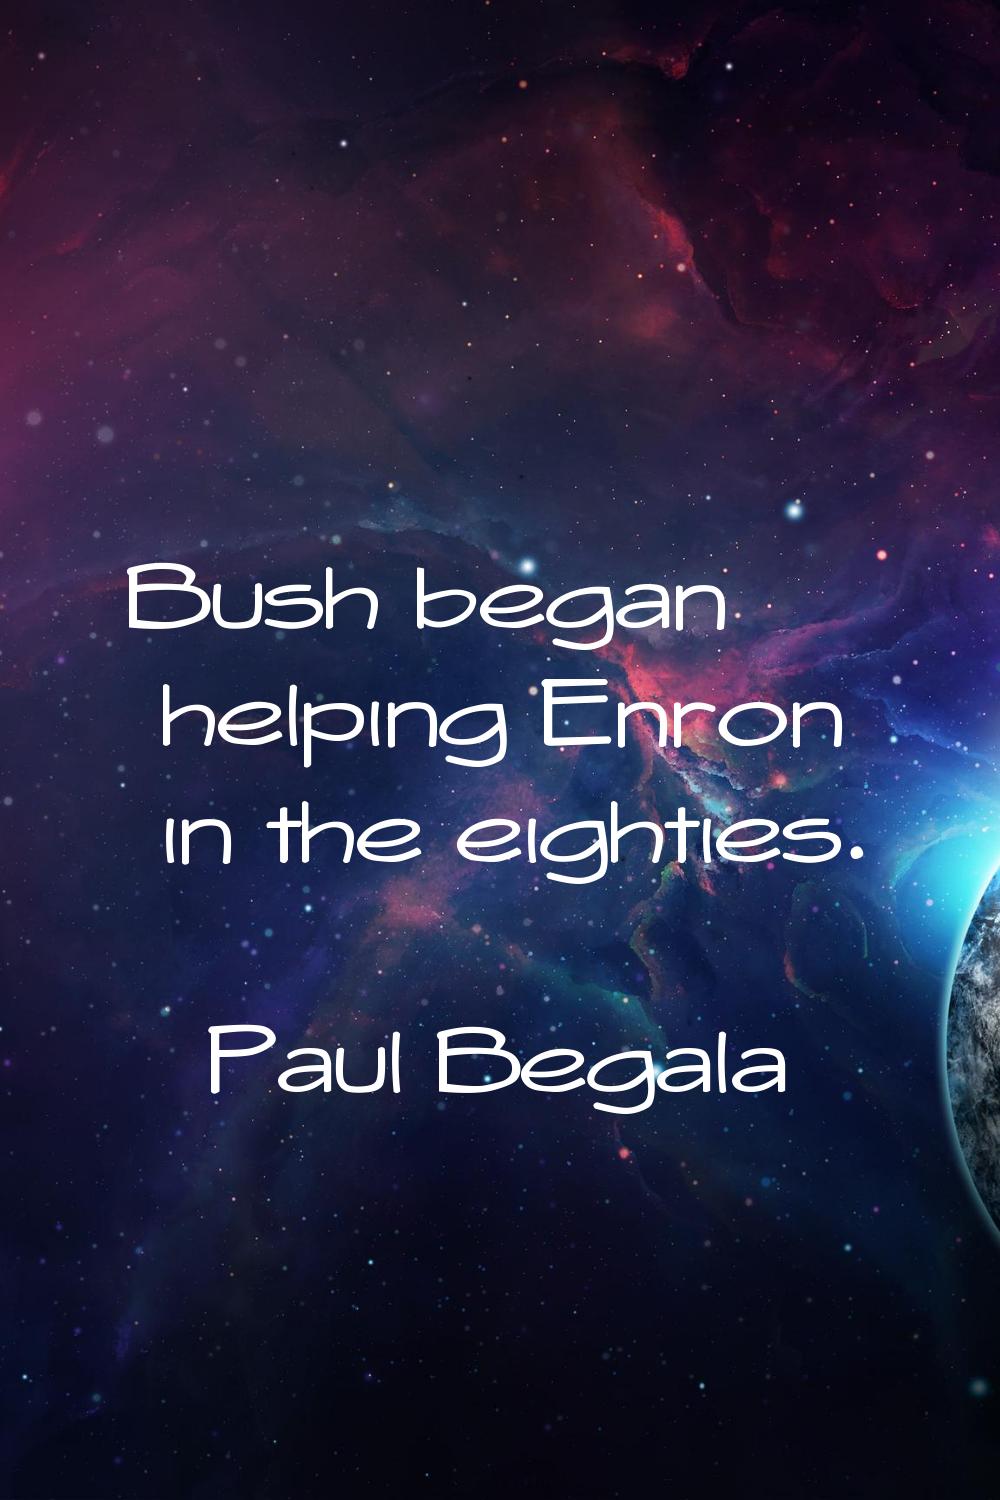 Bush began helping Enron in the eighties.